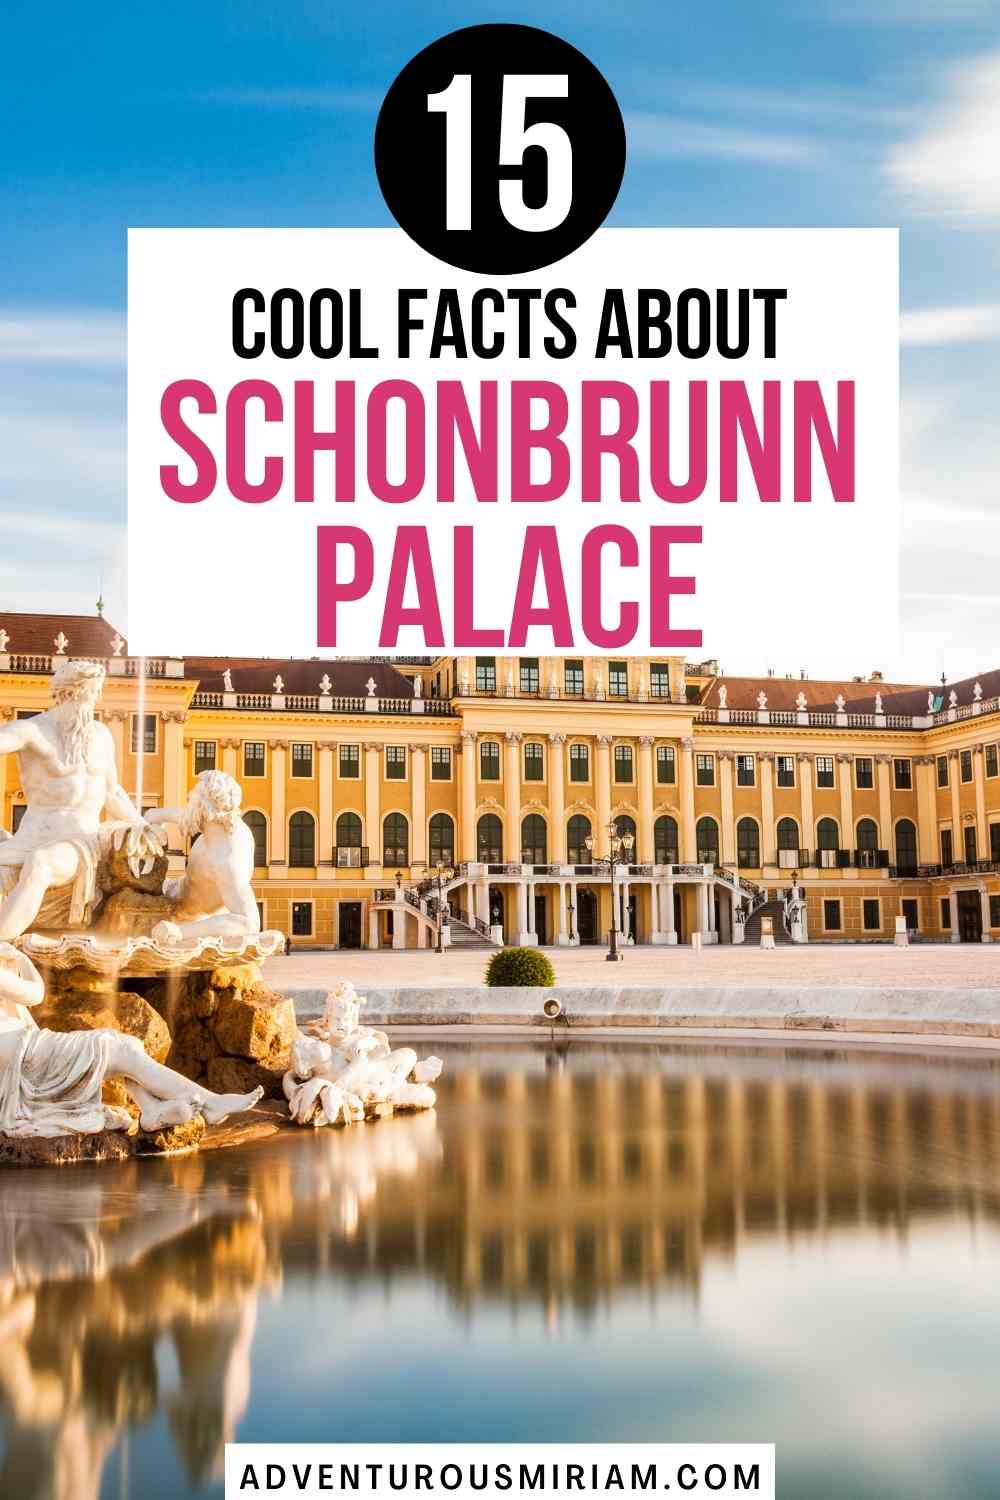 Schonbrunn palace gardens. Schonbrunn palace photography. Schonbrunn palace vienna. Schonbrunn gardens. Schönbrunn wien. Royal aesthetic castle outside. Europe. Schonbrunn palace facts.